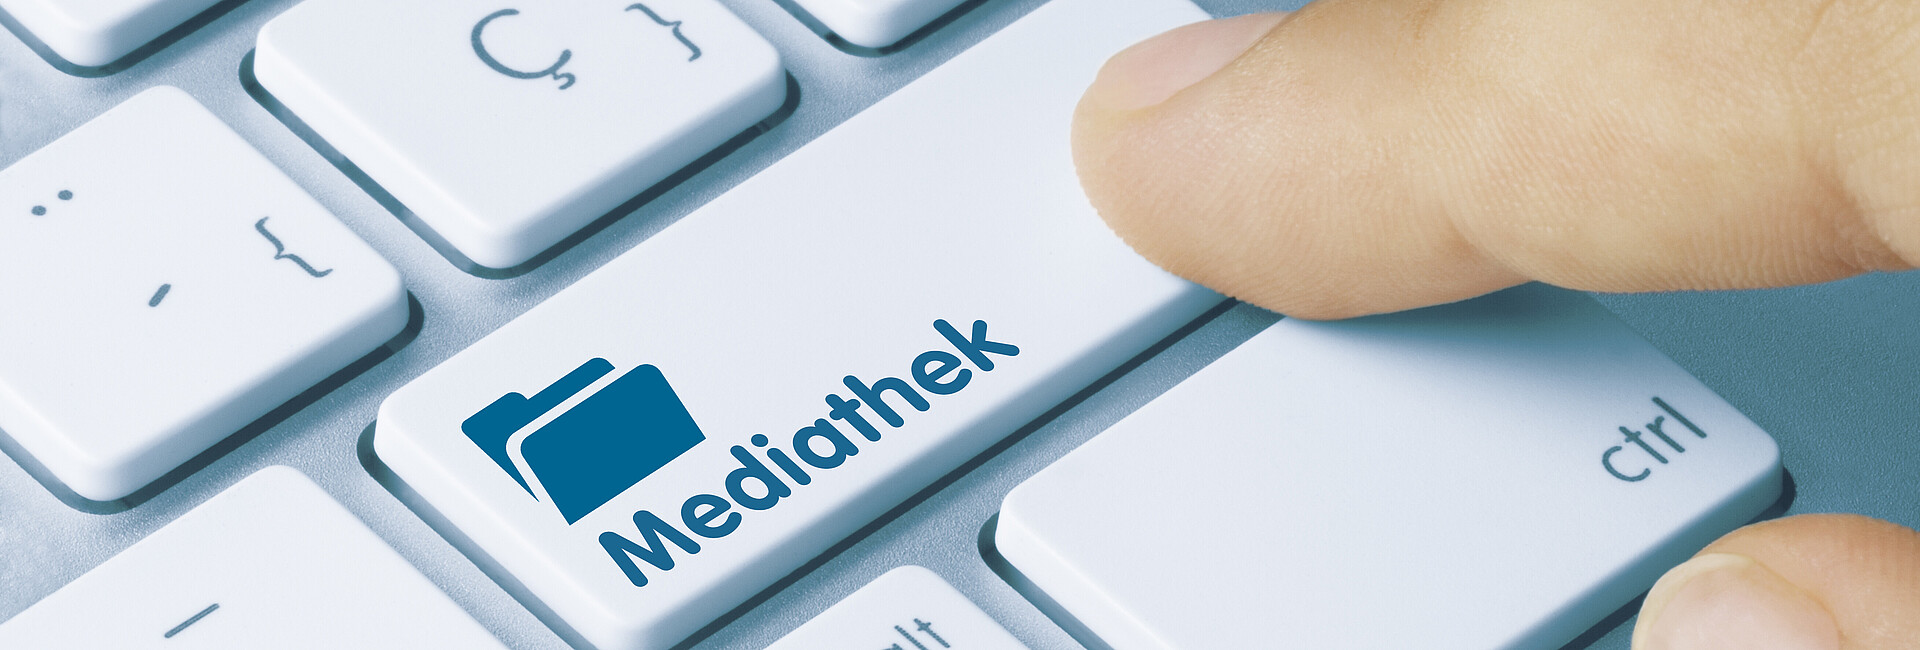 Tastatur - eine Taste ist beschriftet mit dem Schriftzug "Mediathek"